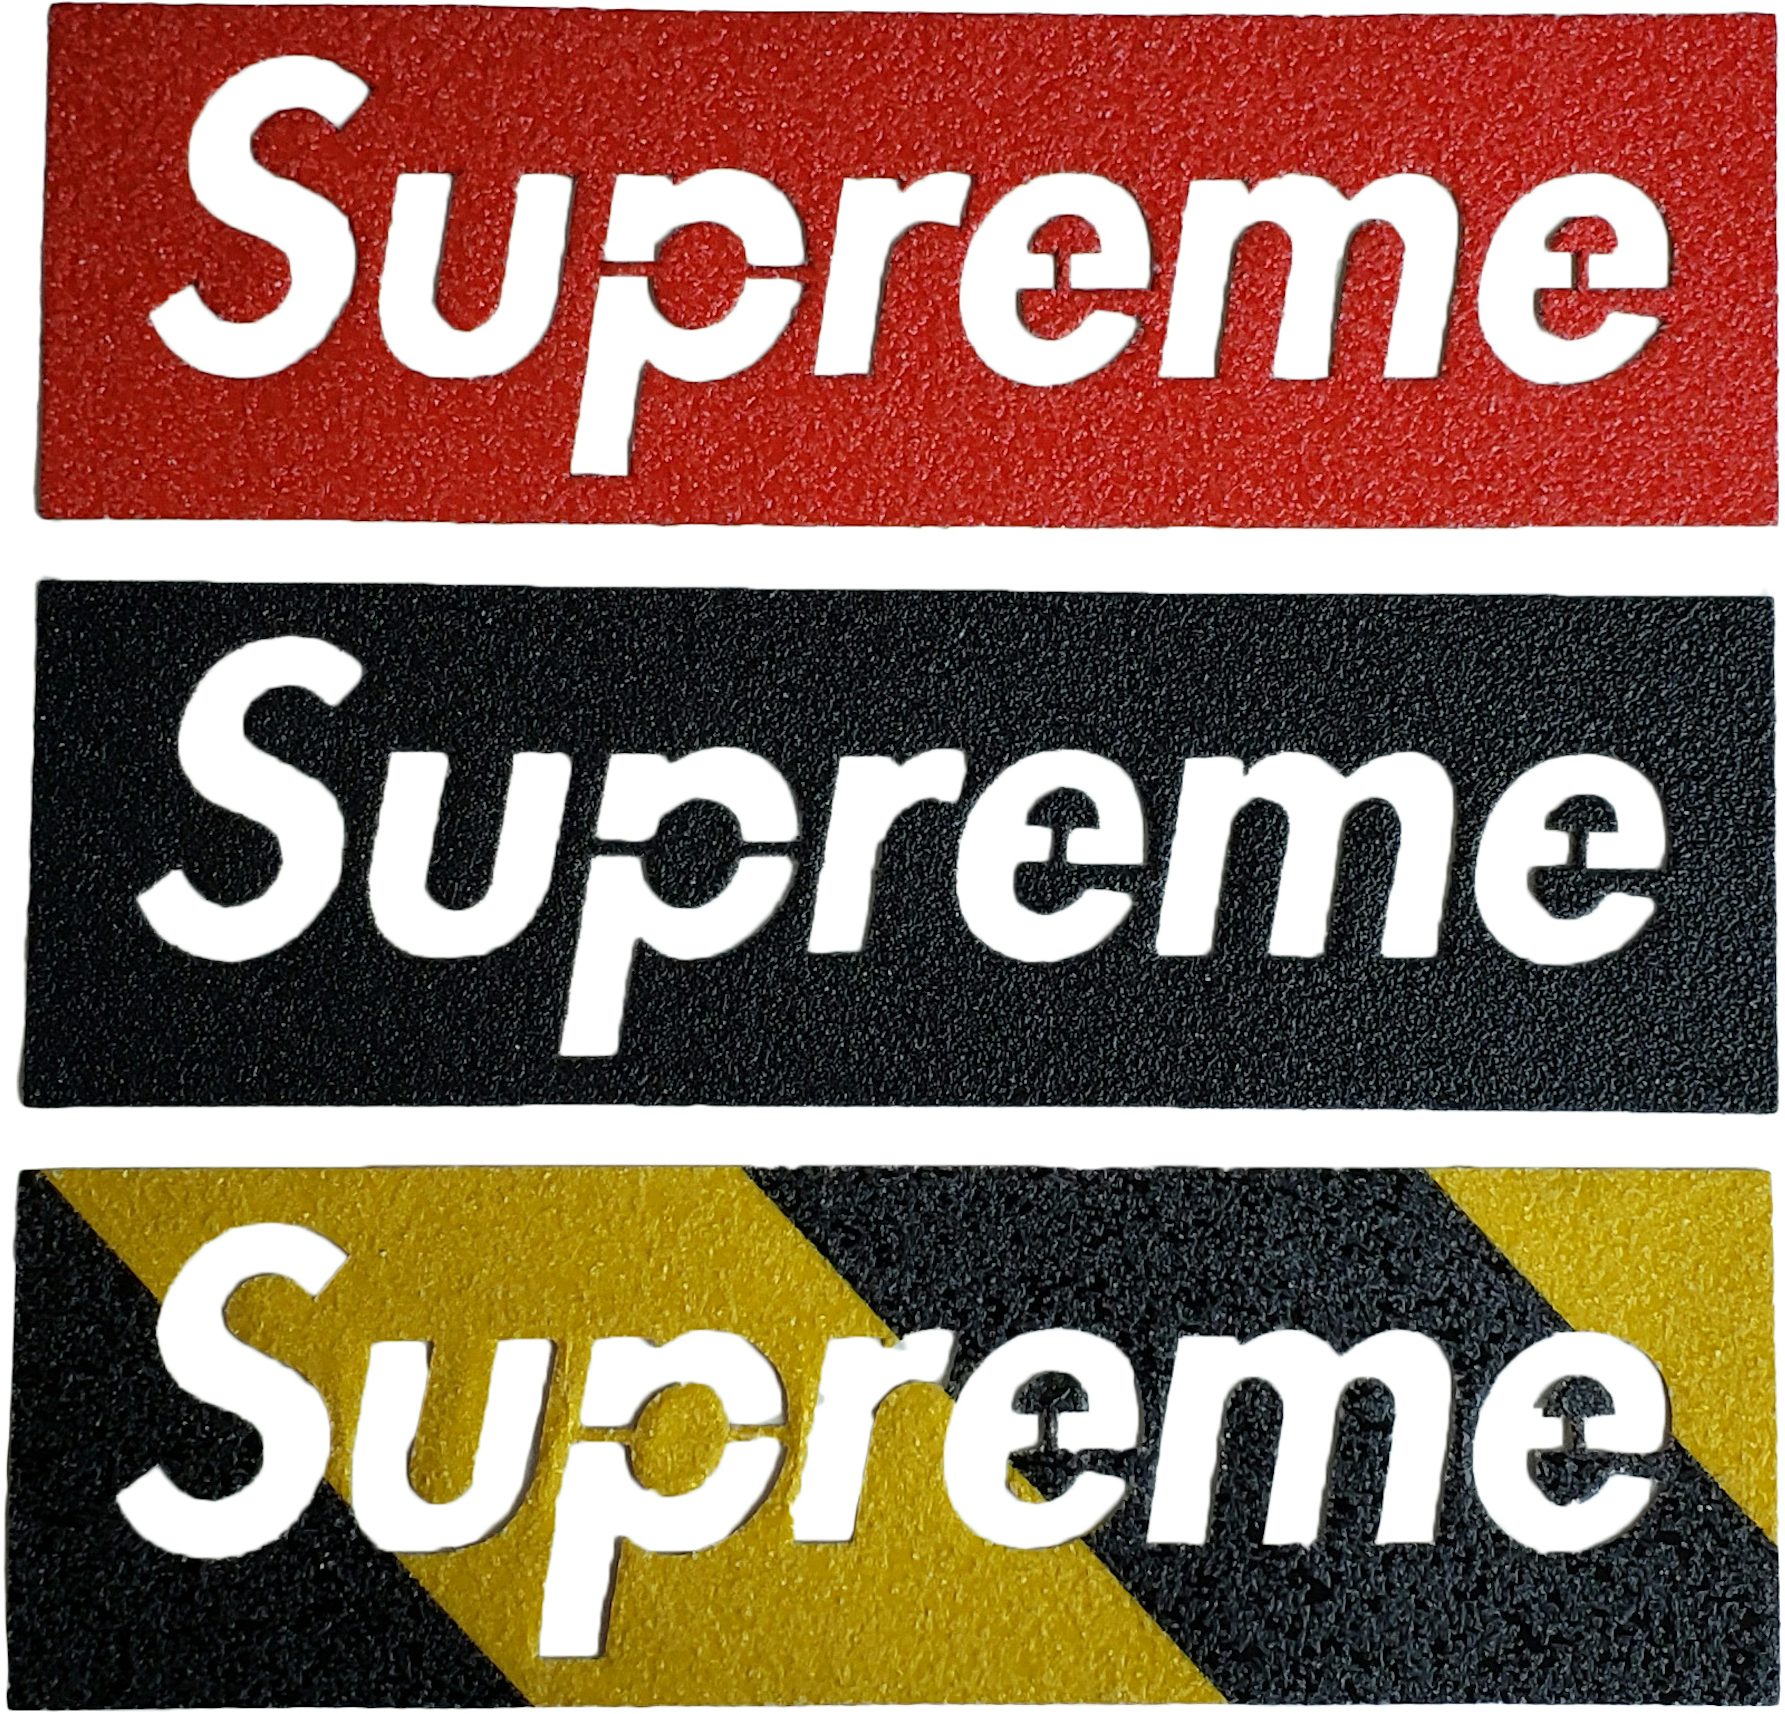 Supreme Red Box Logo Sticker, Authentic